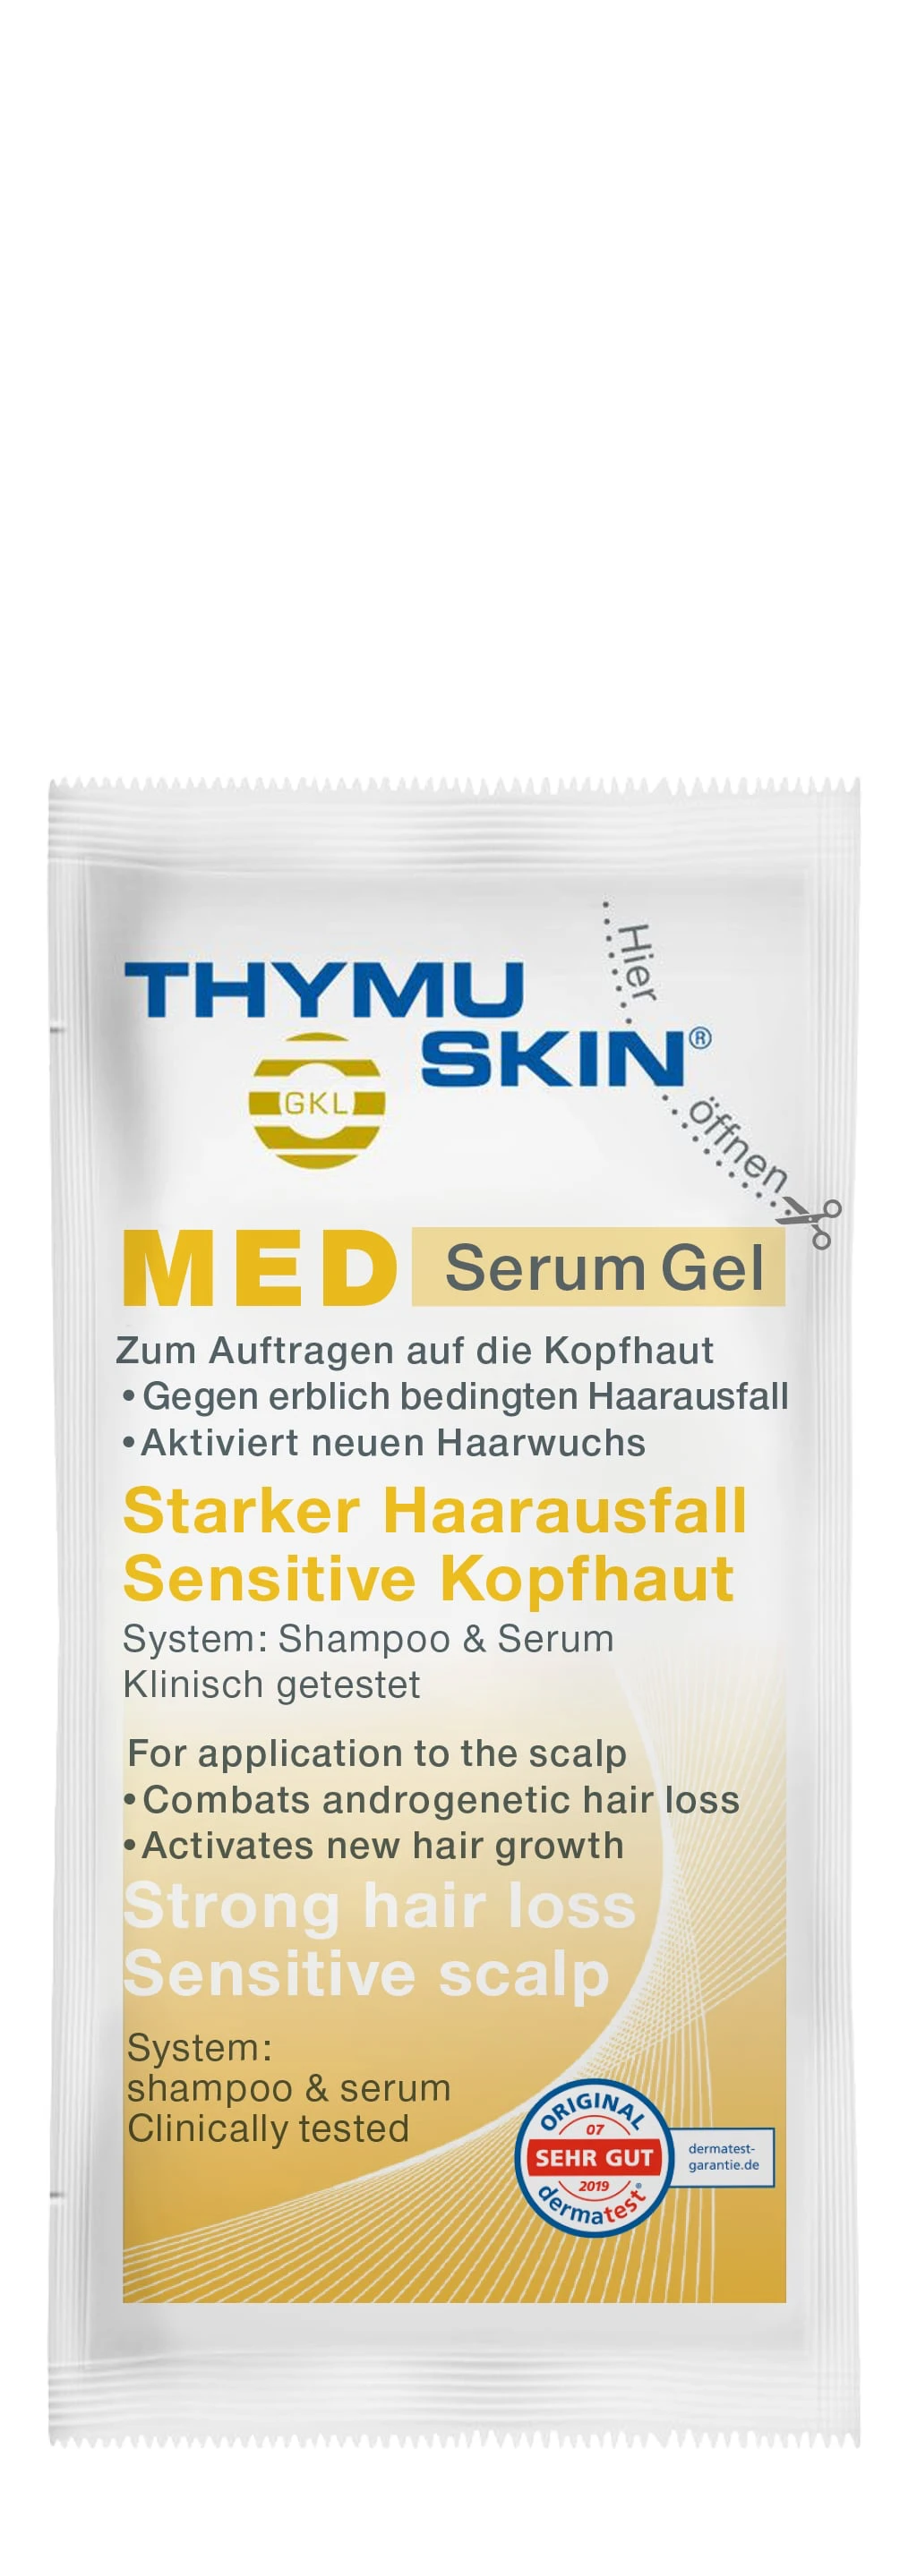 MED Serum Gel (exemple)